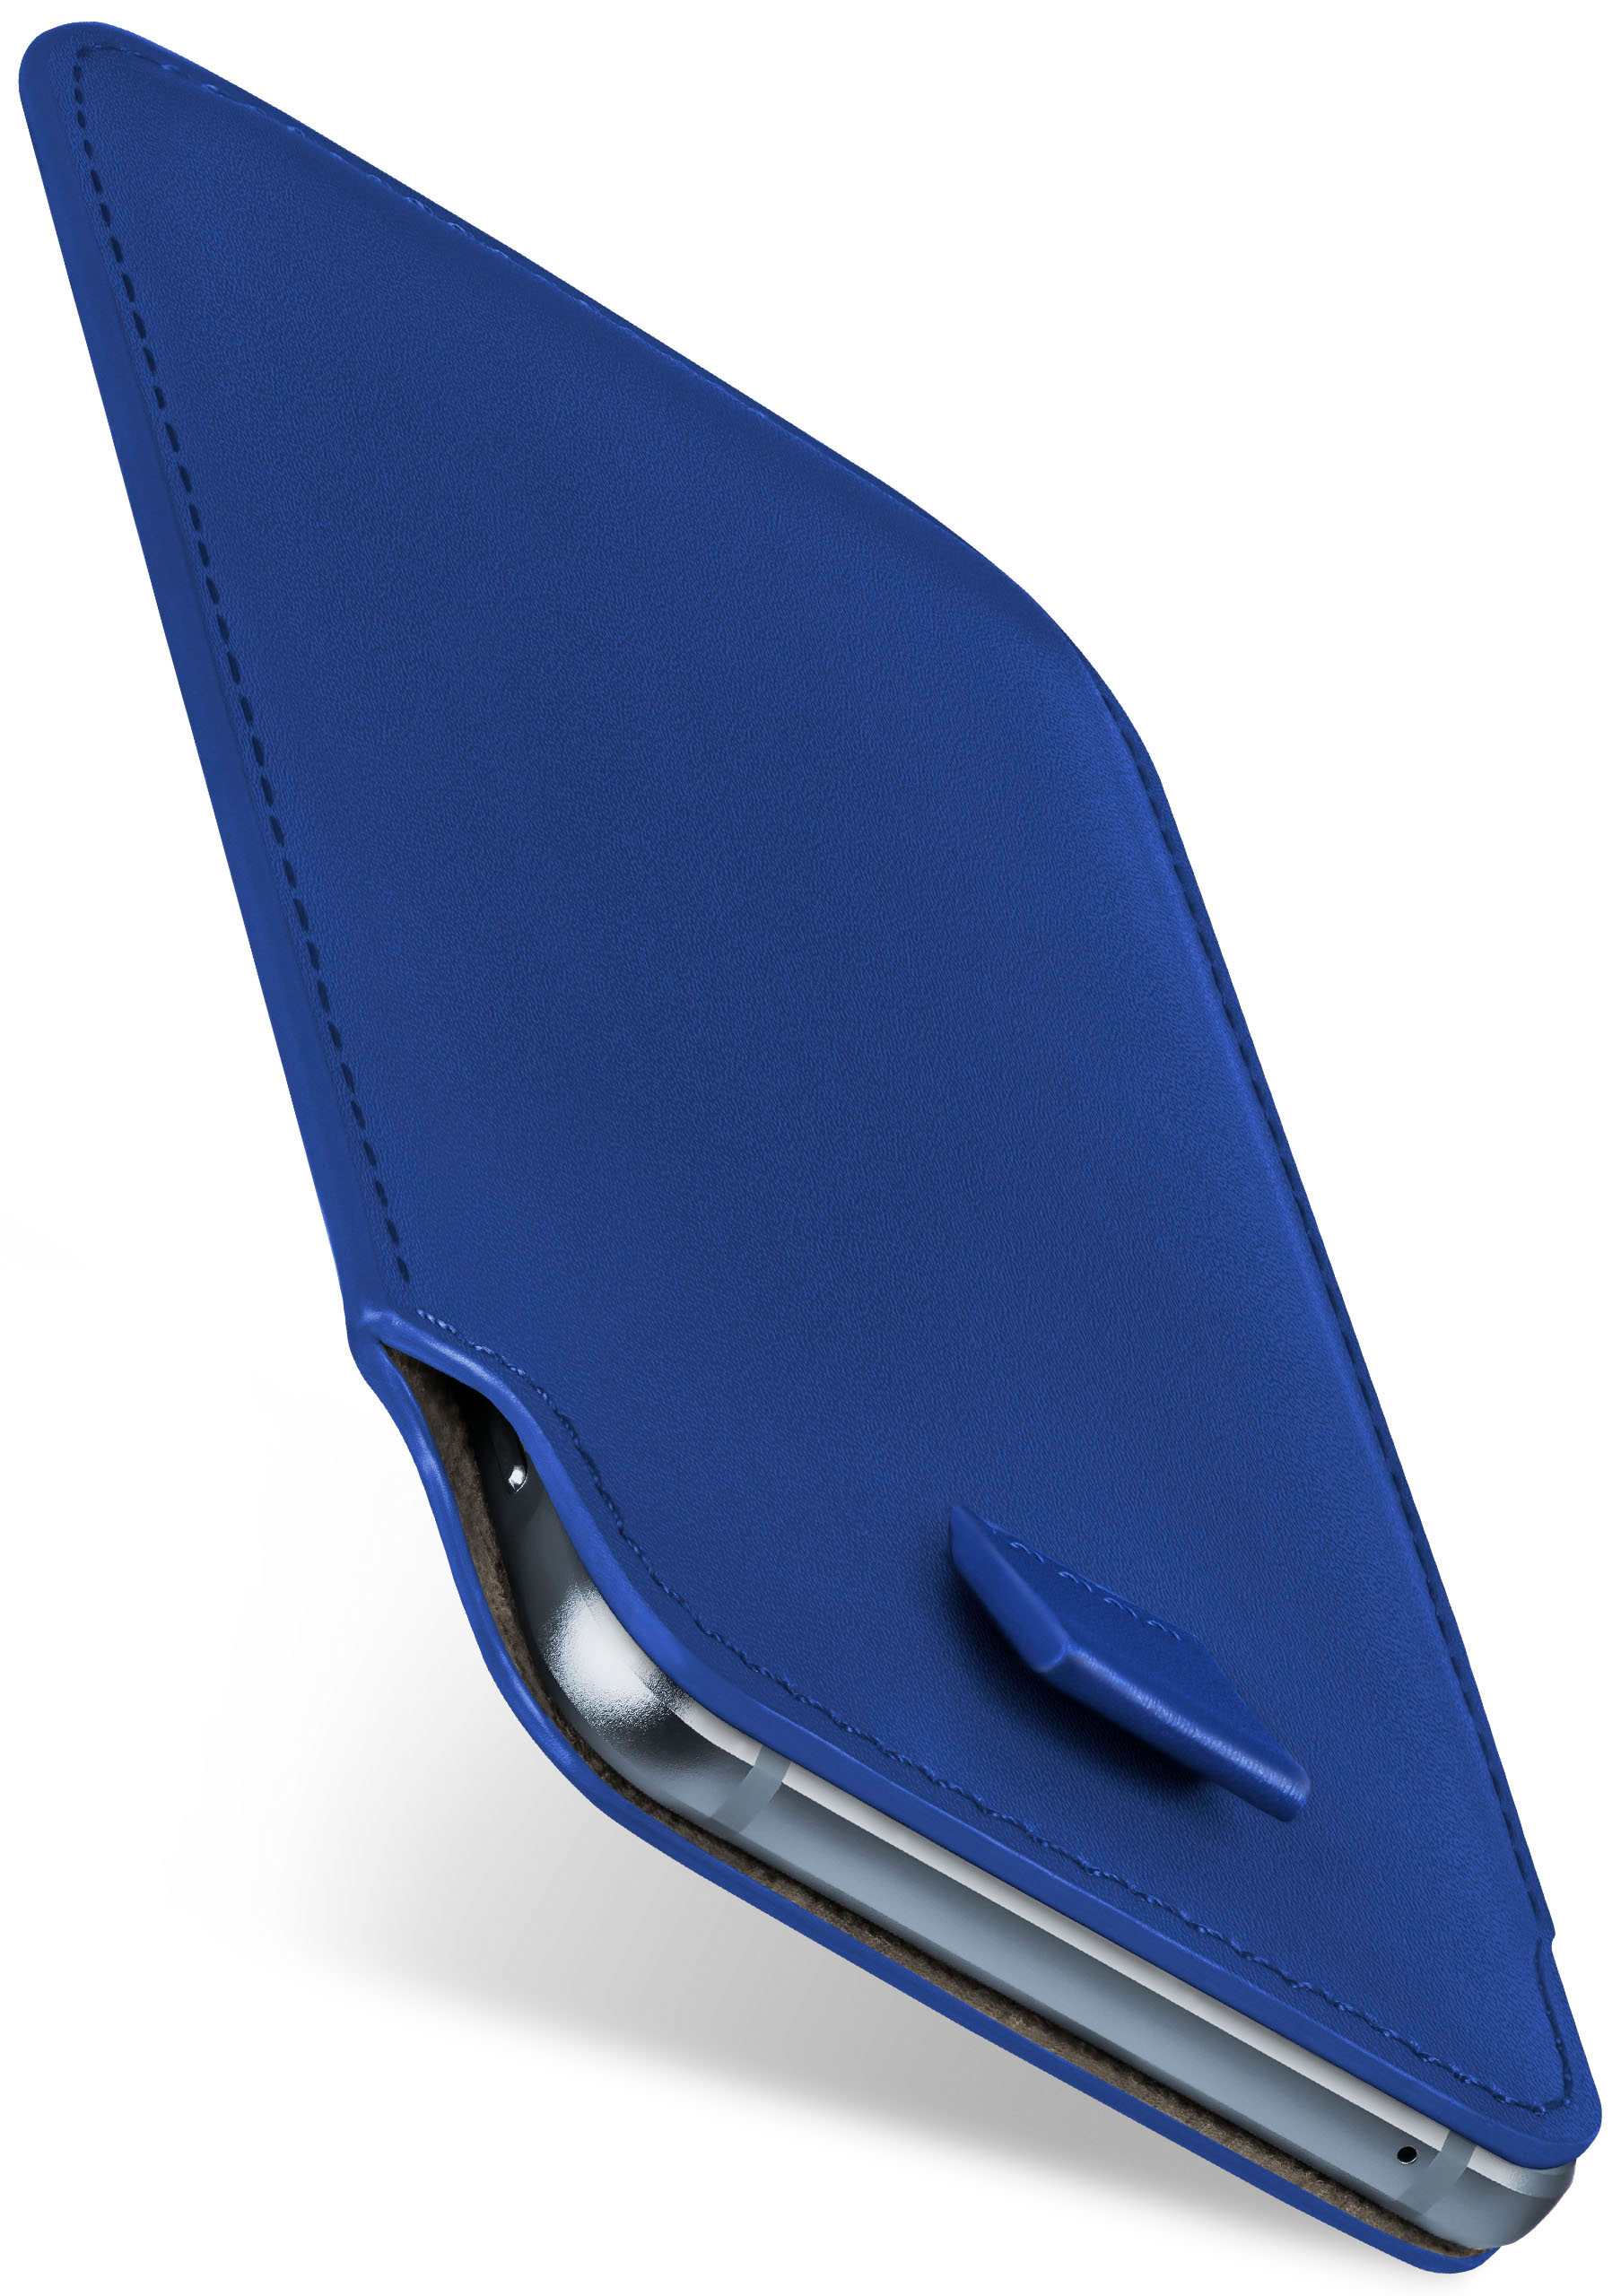 Case, MOEX Q7, Slide Full Cover, LG, Royal-Blue